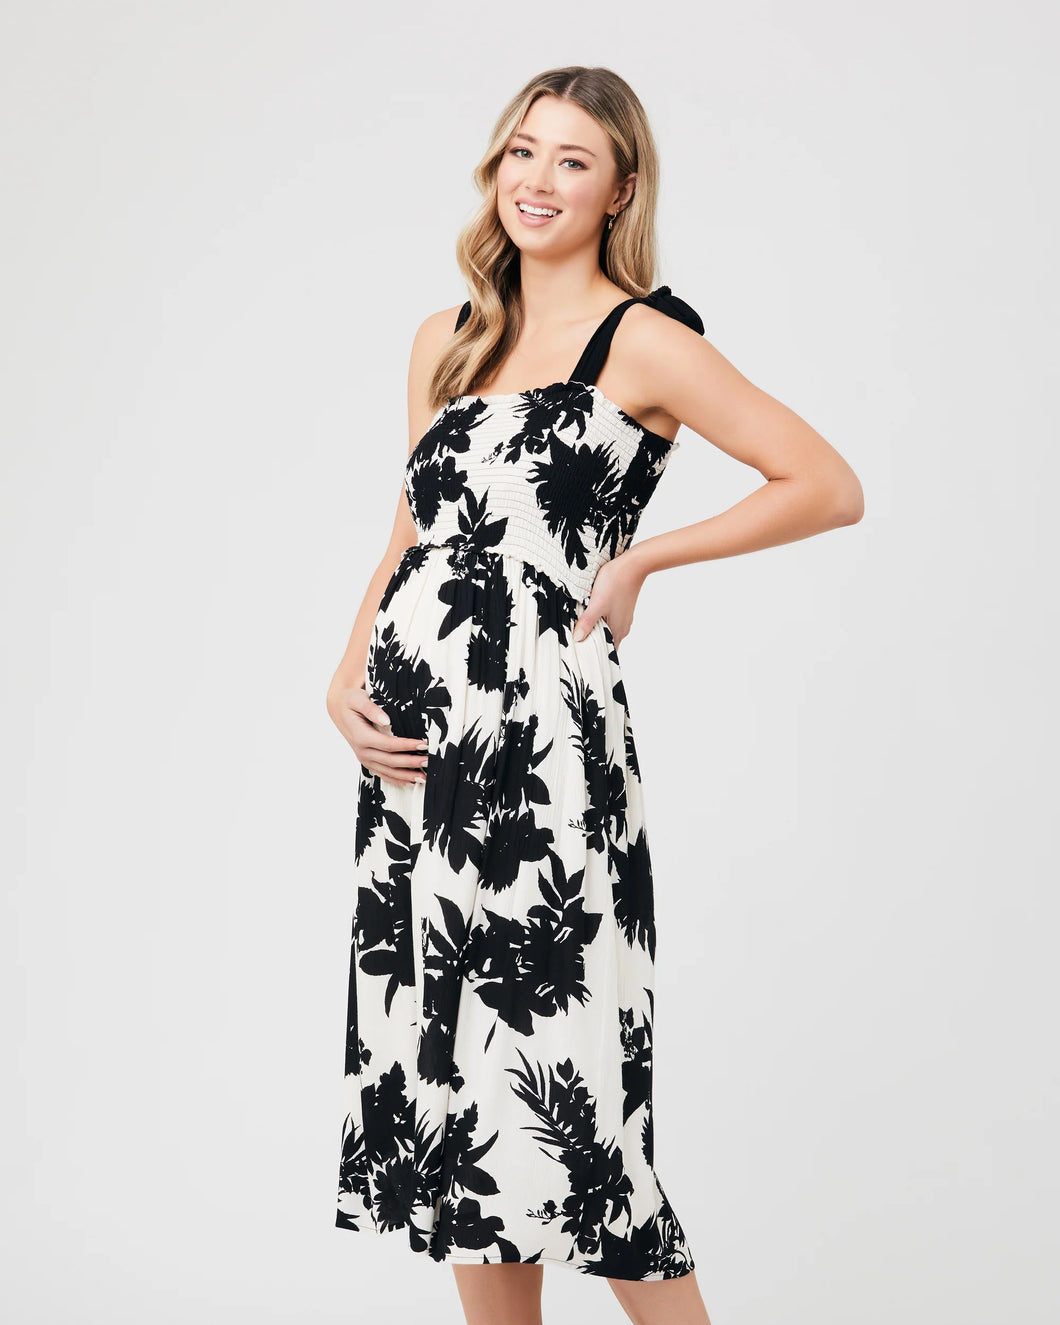 Ripe Maternity - Angie dress XS  | MILD zwangerschapsboetiek - zwangerschapskleding bij Mechelen